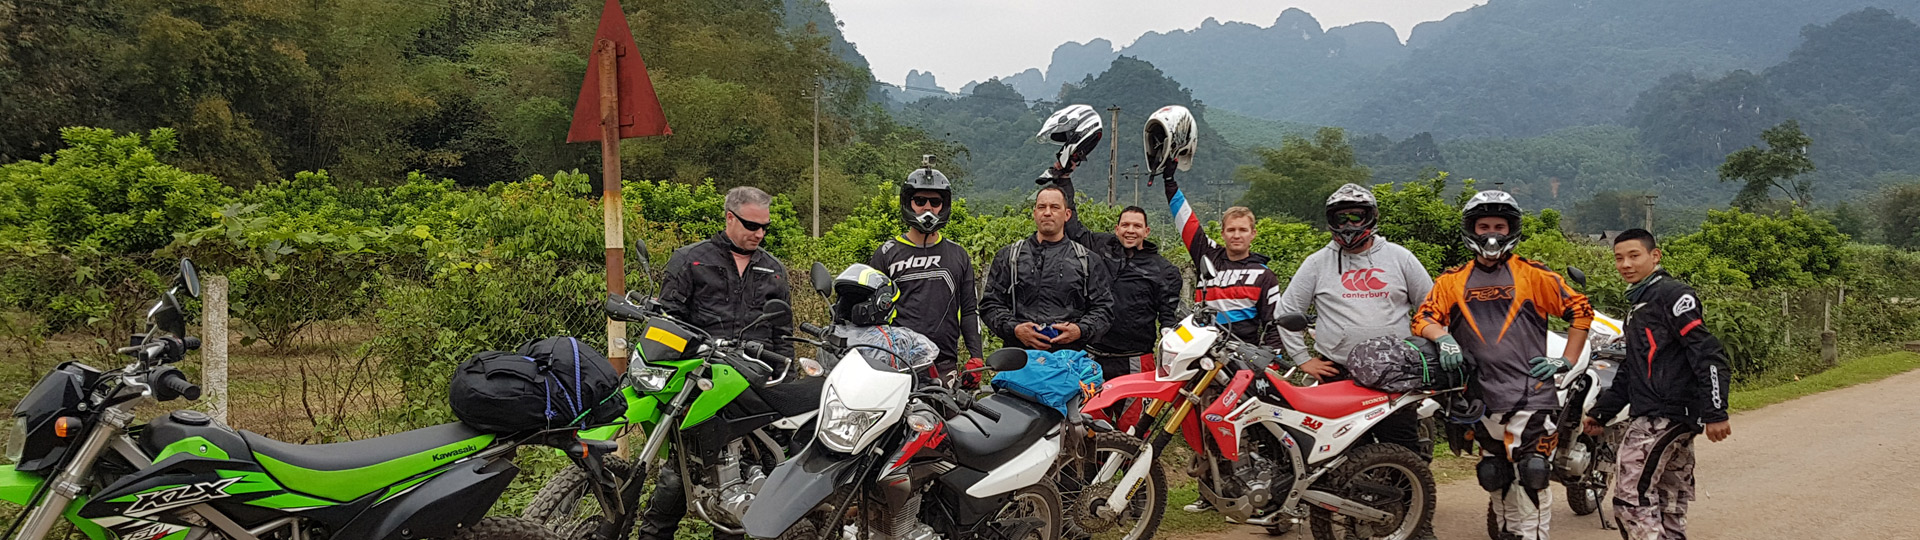 Hanoi easy rider tours 3